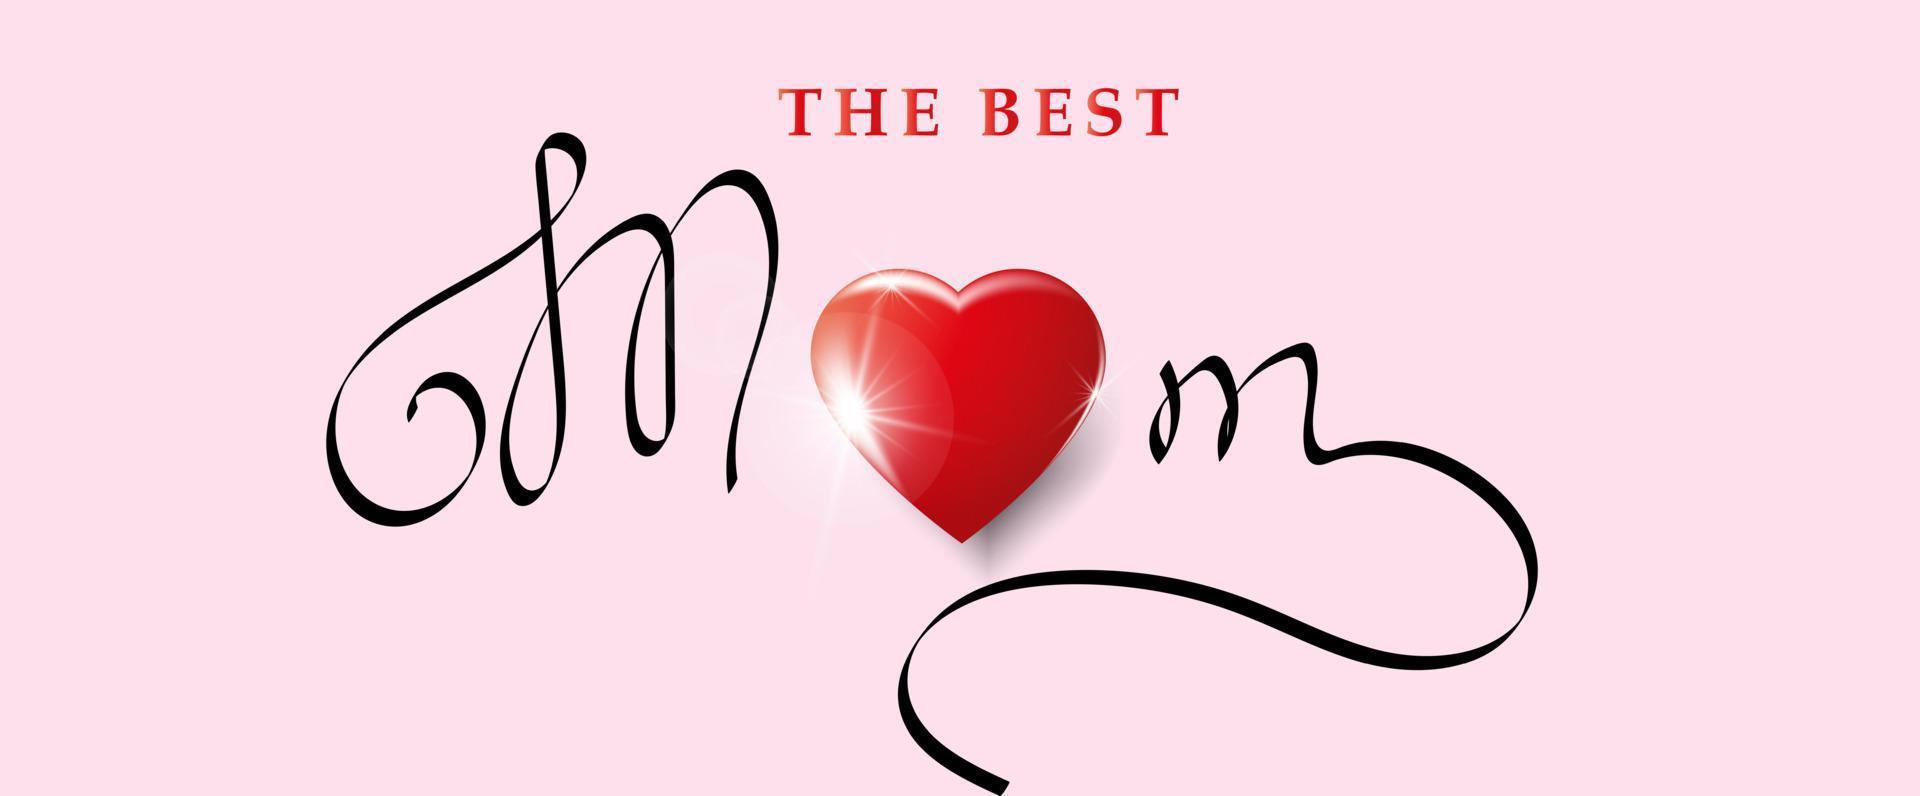 cartão de dia das mães. a melhor mãe. coração 3d vermelho em um fundo rosa. ilustração vetorial moderna vetor